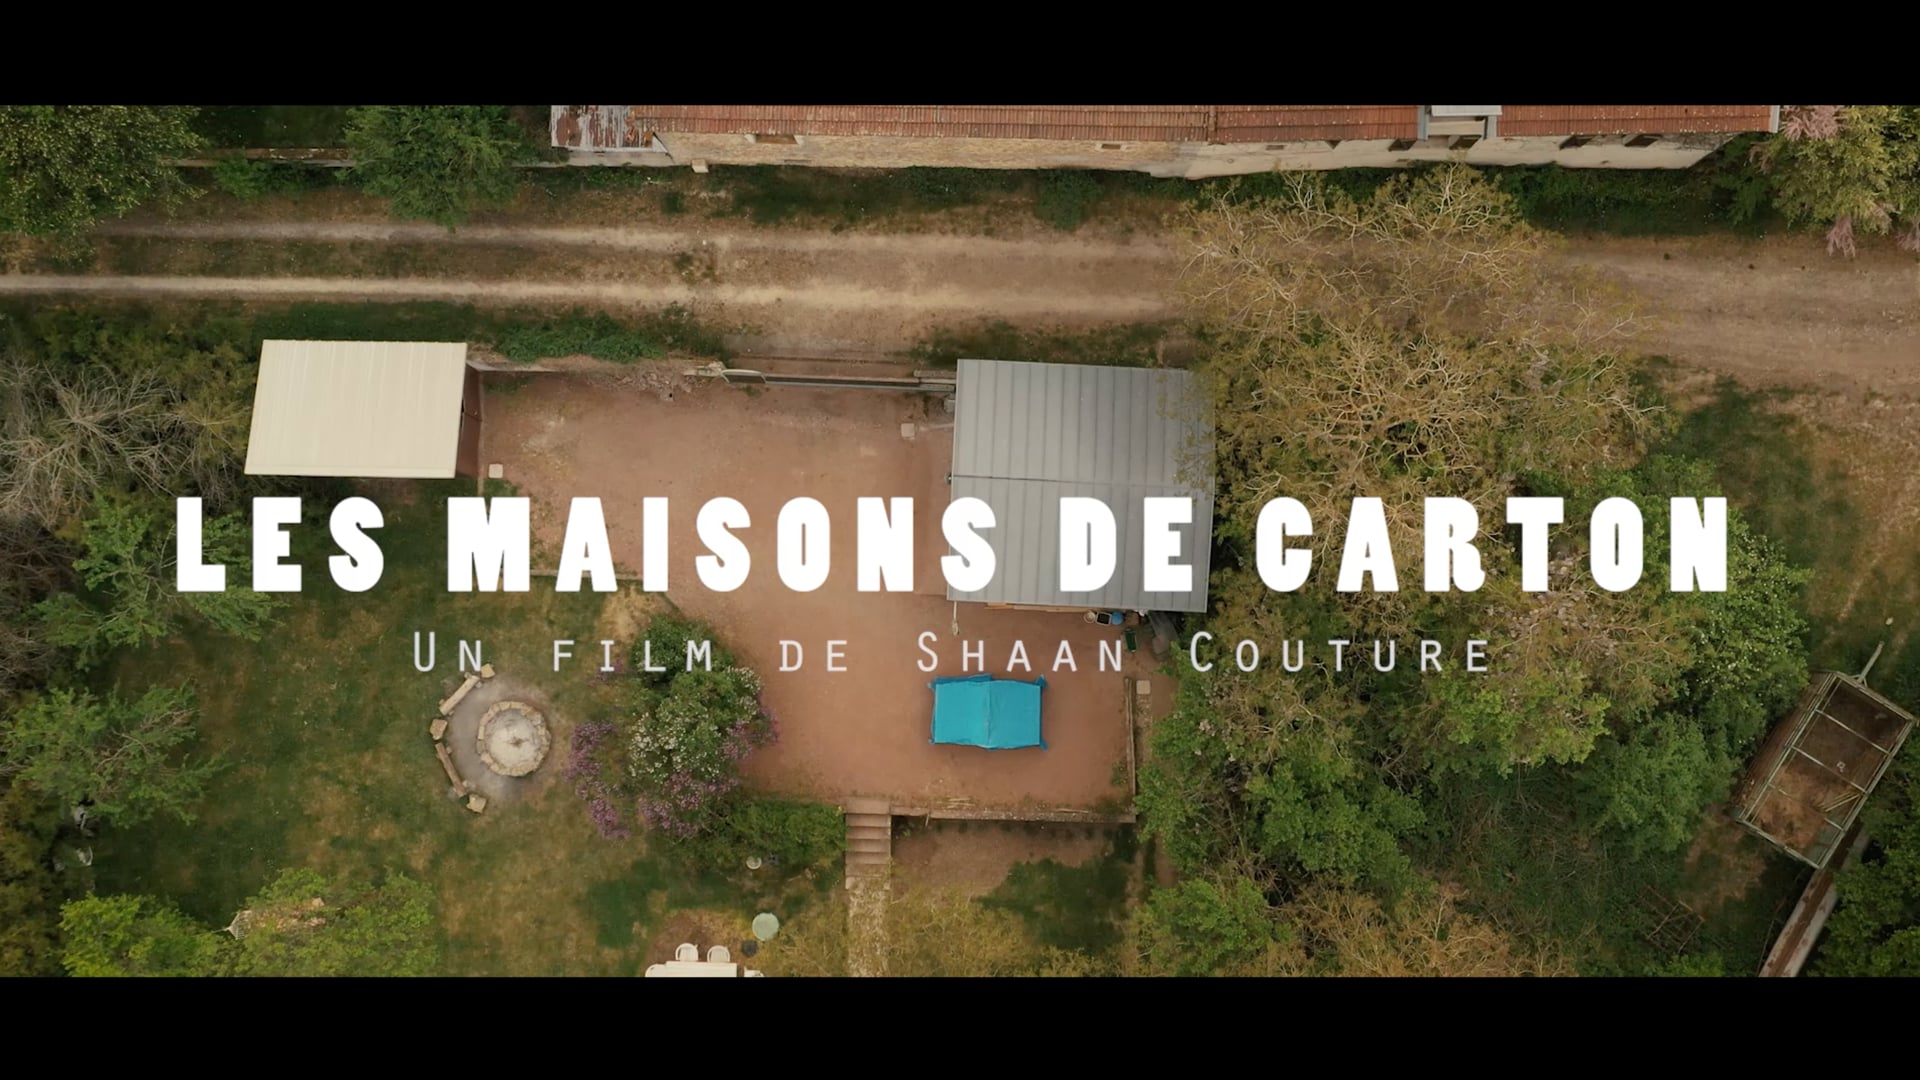 Les Maisons de Carton (2020) - Un film réalisé (en confinement) par Shaan Couture